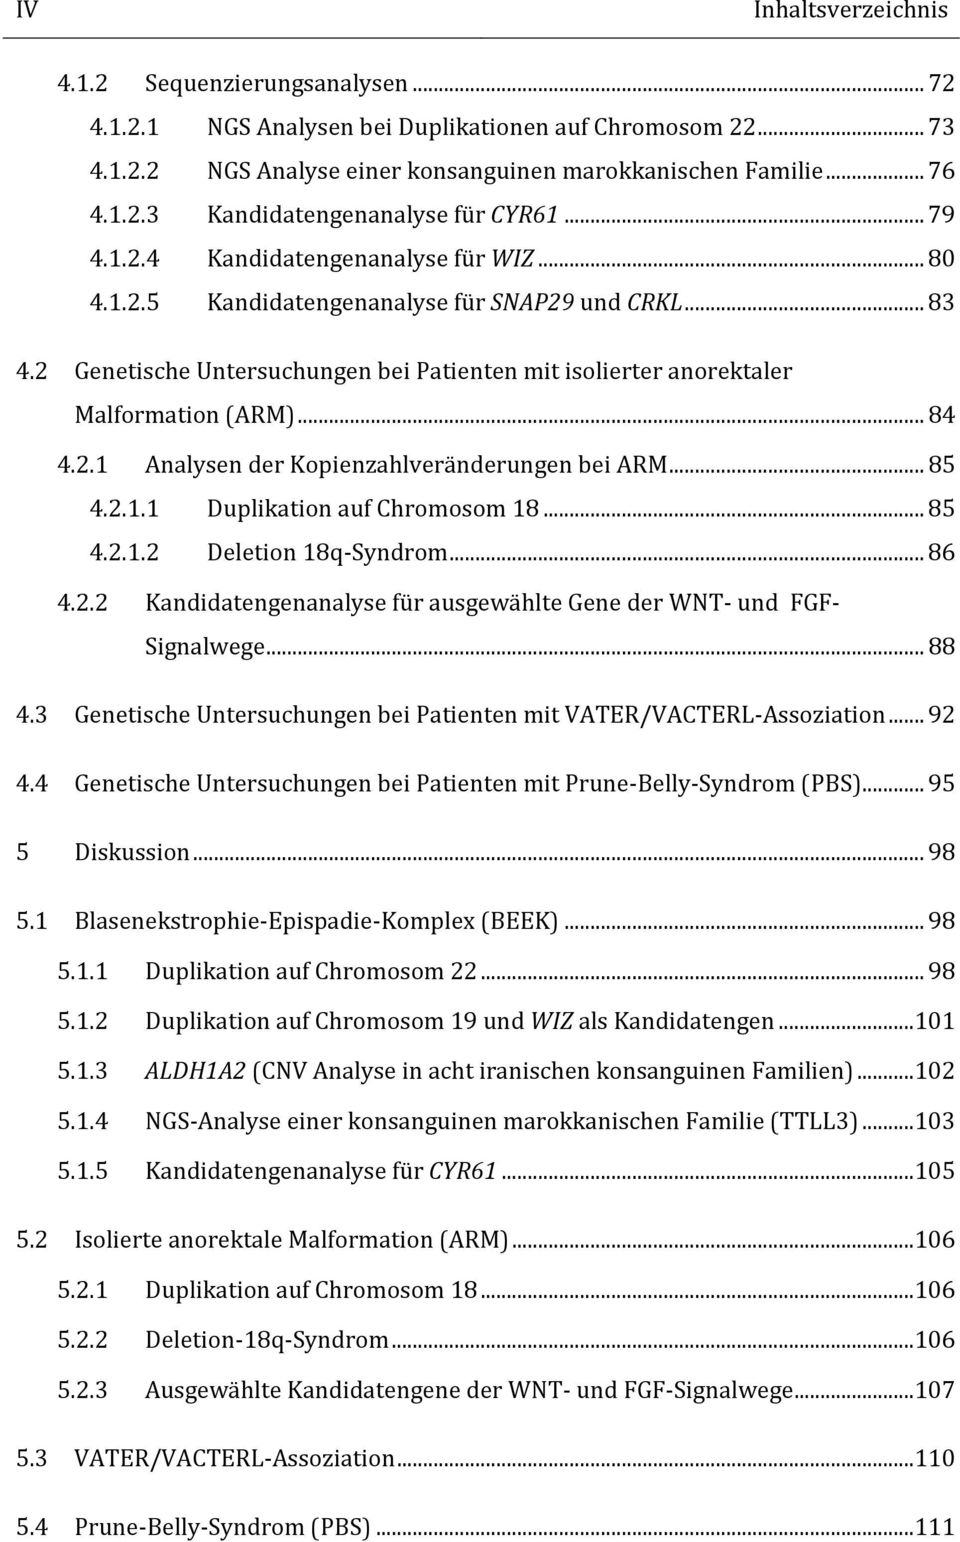 2.1 Analysen der Kopienzahlveränderungen bei ARM... 85 4.2.1.1 Duplikation auf Chromosom 18... 85 4.2.1.2 Deletion 18q-Syndrom... 86 4.2.2 Kandidatengenanalyse für ausgewählte Gene der WNT- und FGF- Signalwege.